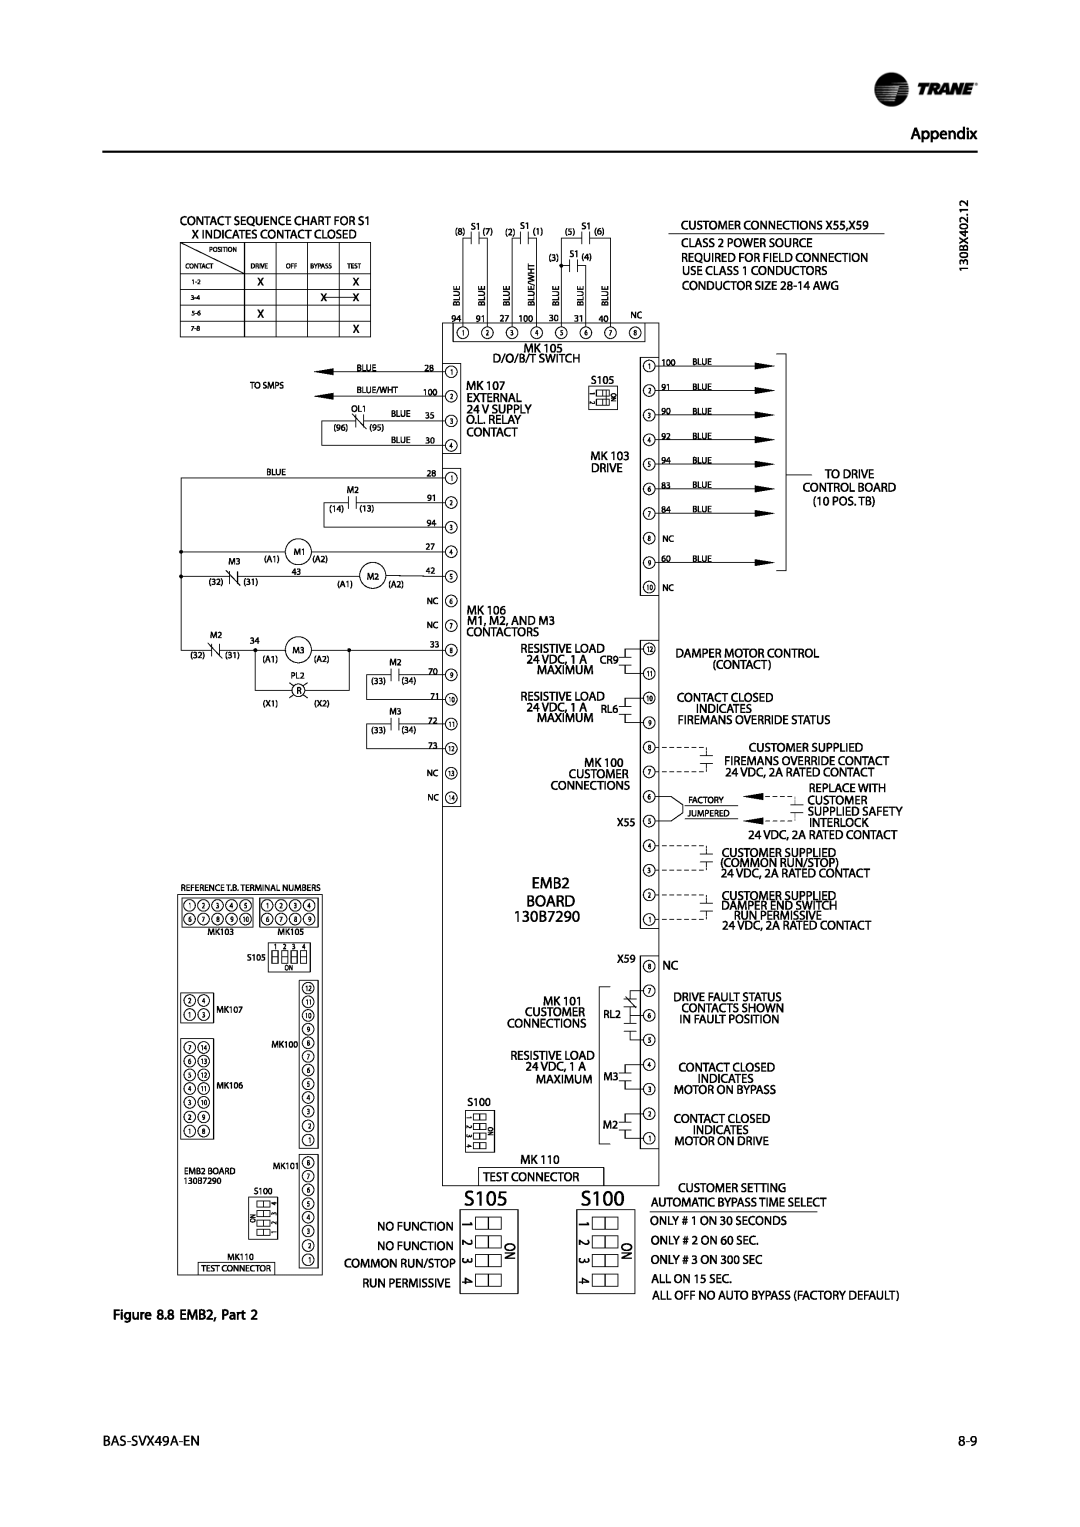 Trane Vertical Bypass/Non Bypass Panel, TR200 specifications Appendix, BAS-SVX49A-EN, 8 EMB2, Part 